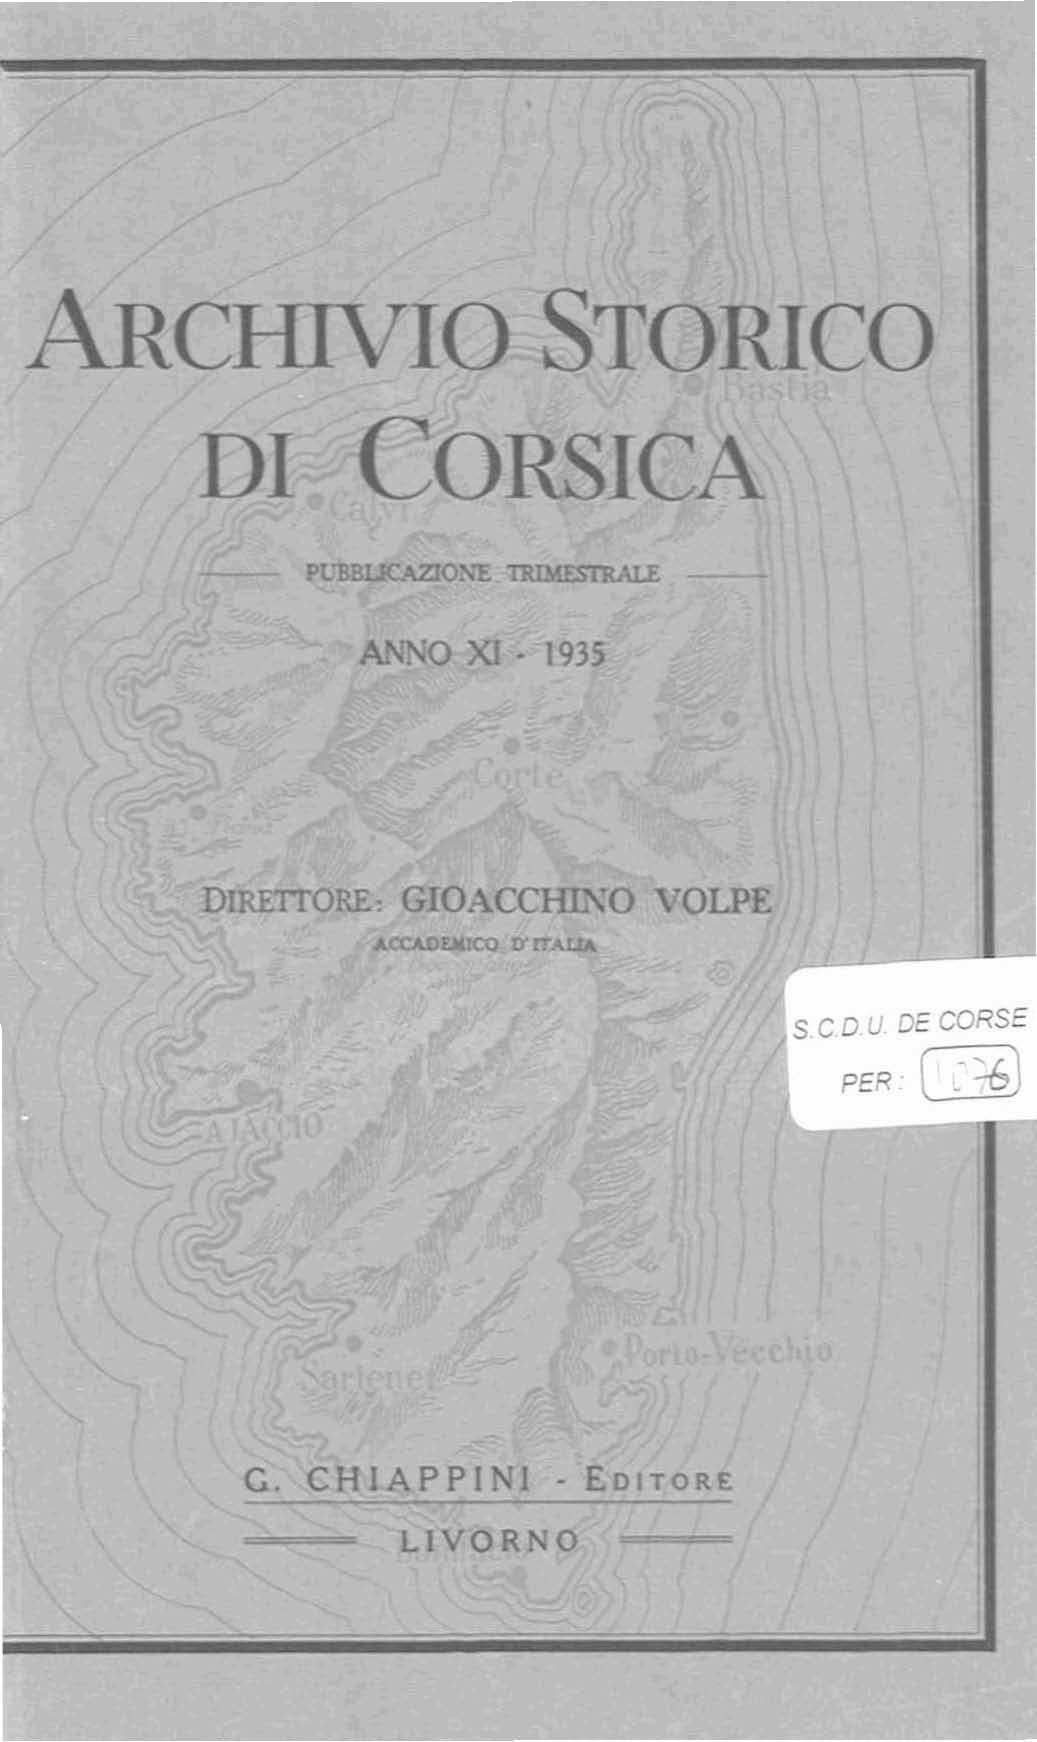 >Archivio Storico di Corsica (1935)